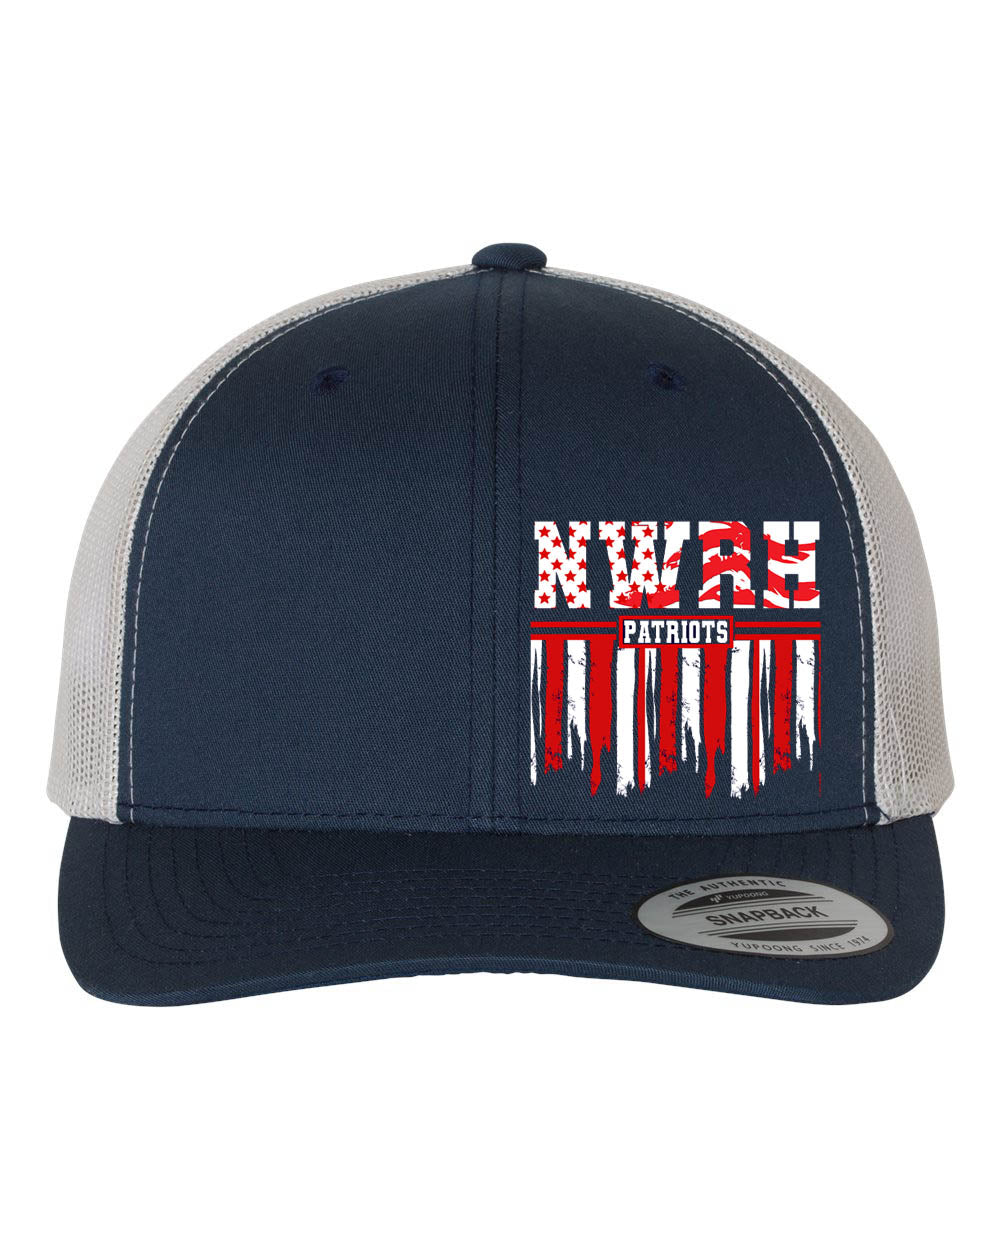 North Warren Design 2 Trucker Hat